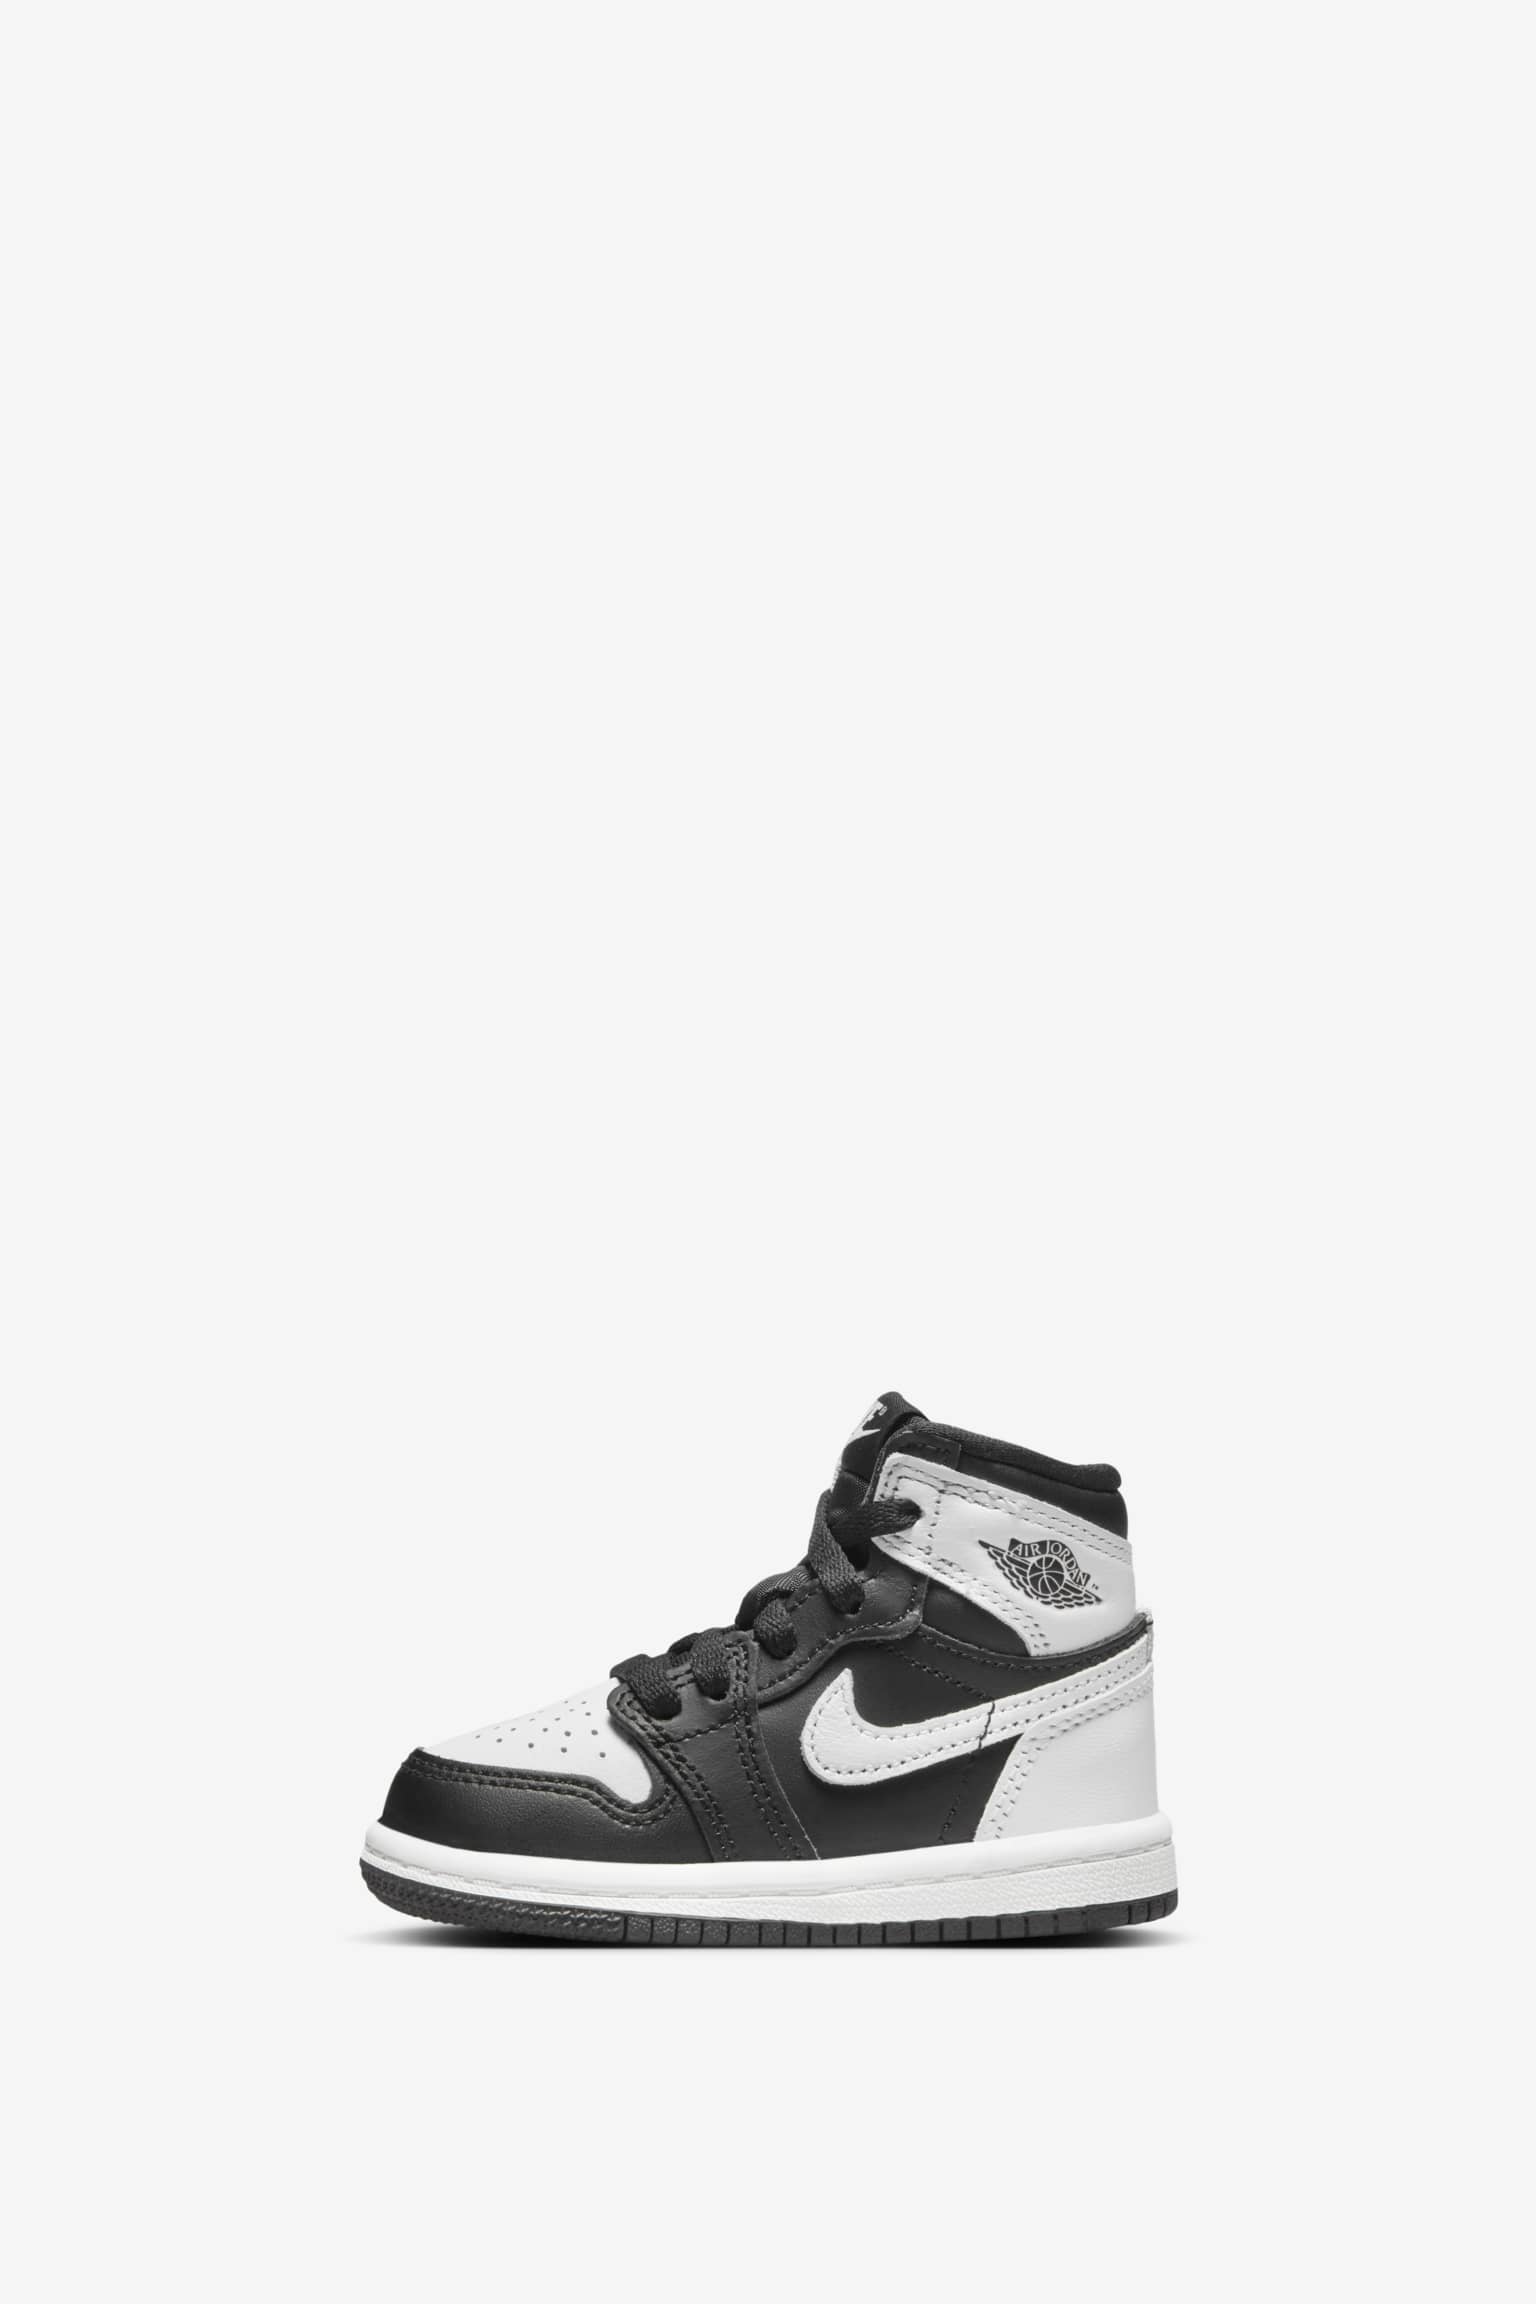 Air Jordan 1 High OG 'Black/White' (DZ5485-010) Release Date. Nike 